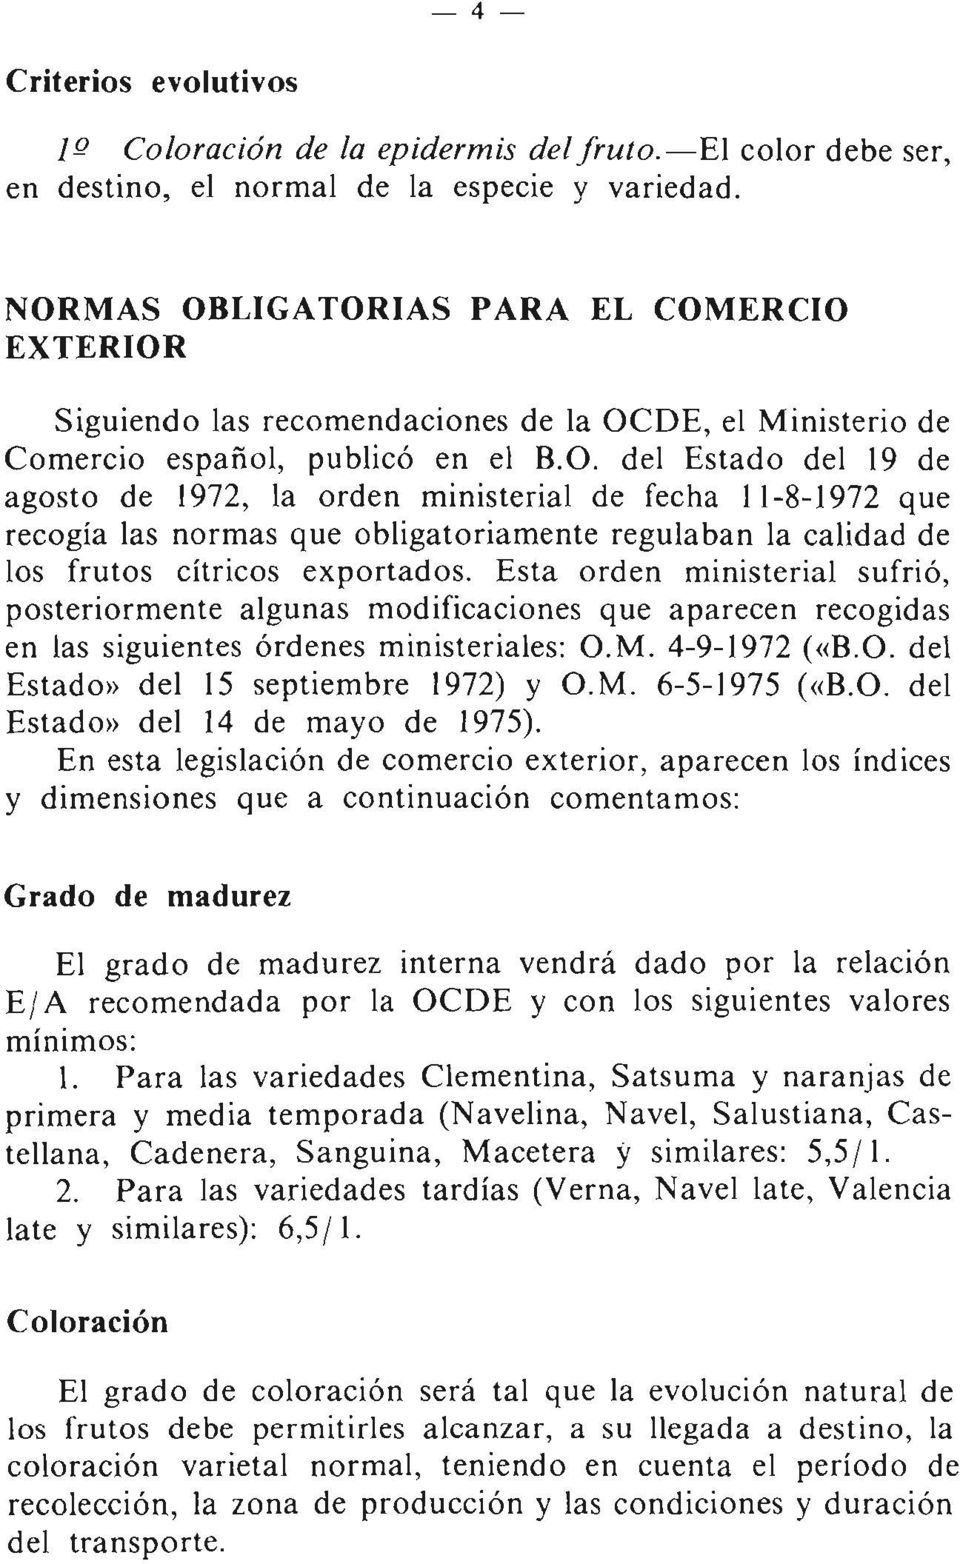 Esta orden ministerial sufrió, posteriormente algunas modificaciones que aparecen recogidas en las siguientes órdenes ministeriales: O.M. 4-9-1972 ( «B.O. del Estado» del 15 septiembre 1972) y O.M. 6-5-1975 ( «B.